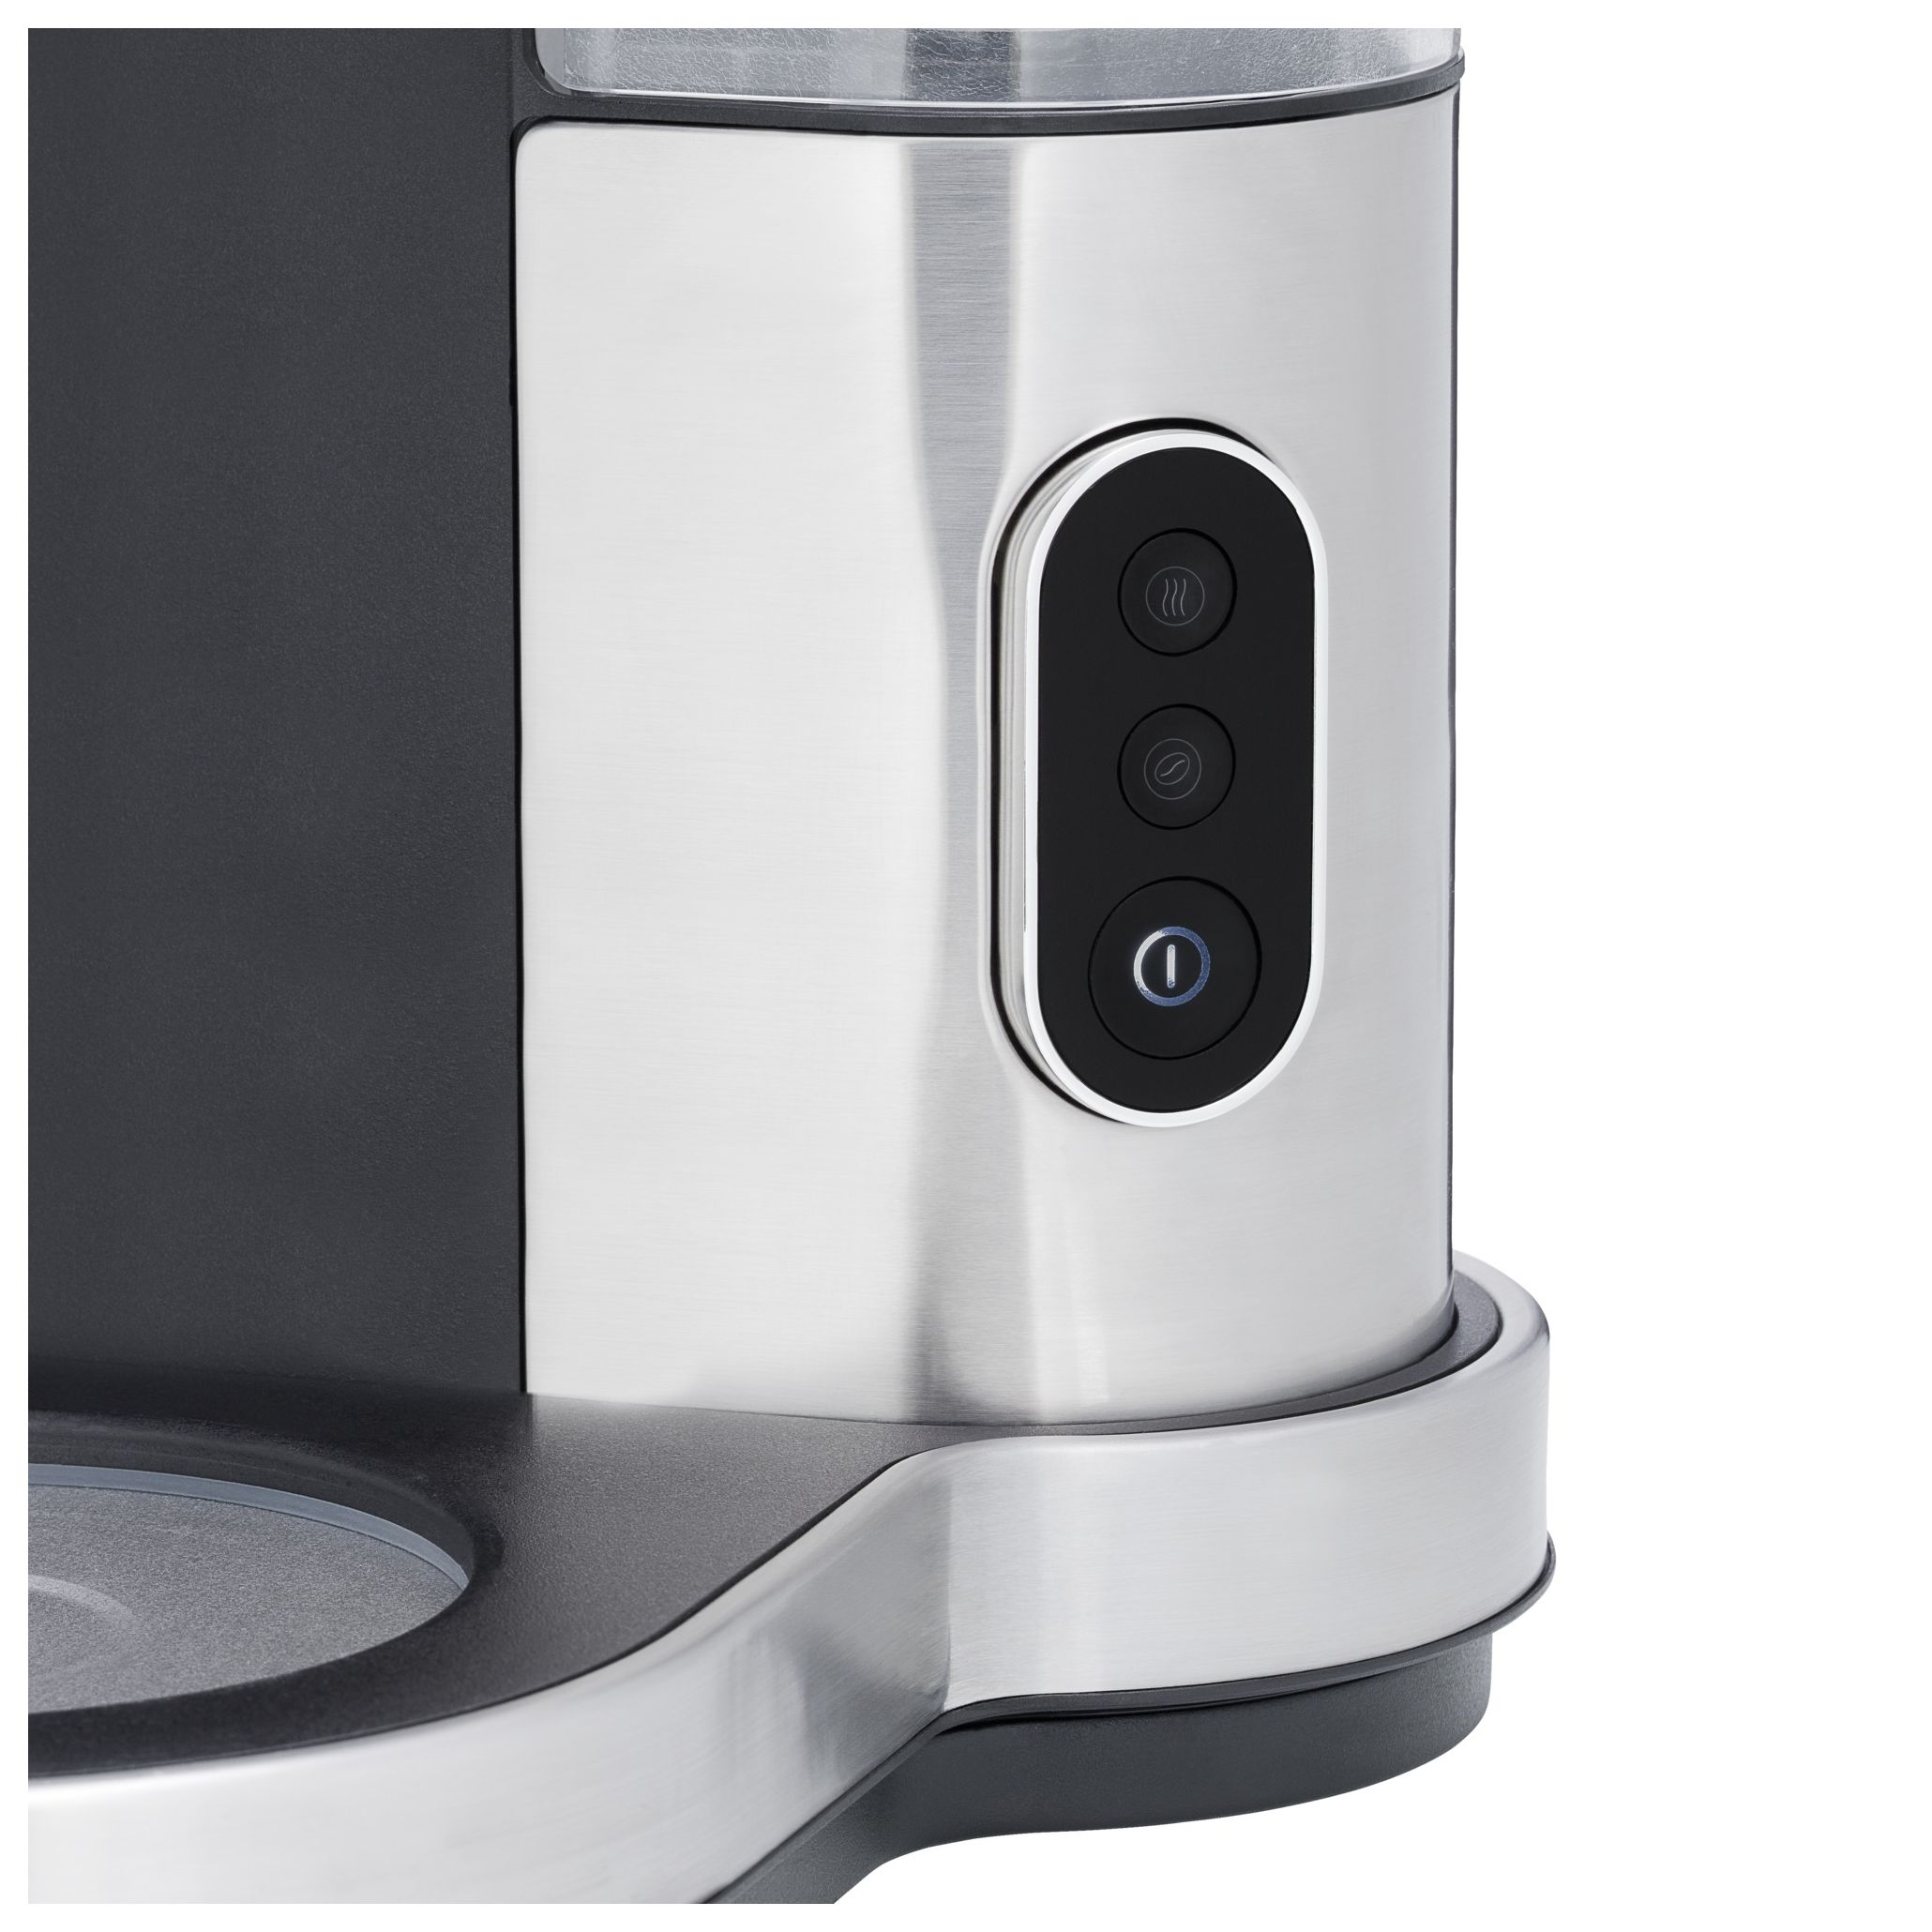 WMF Lono Thermo 8 Filterkaffeemaschine Thermo Tassen Technomarkt 1,0 l expert von